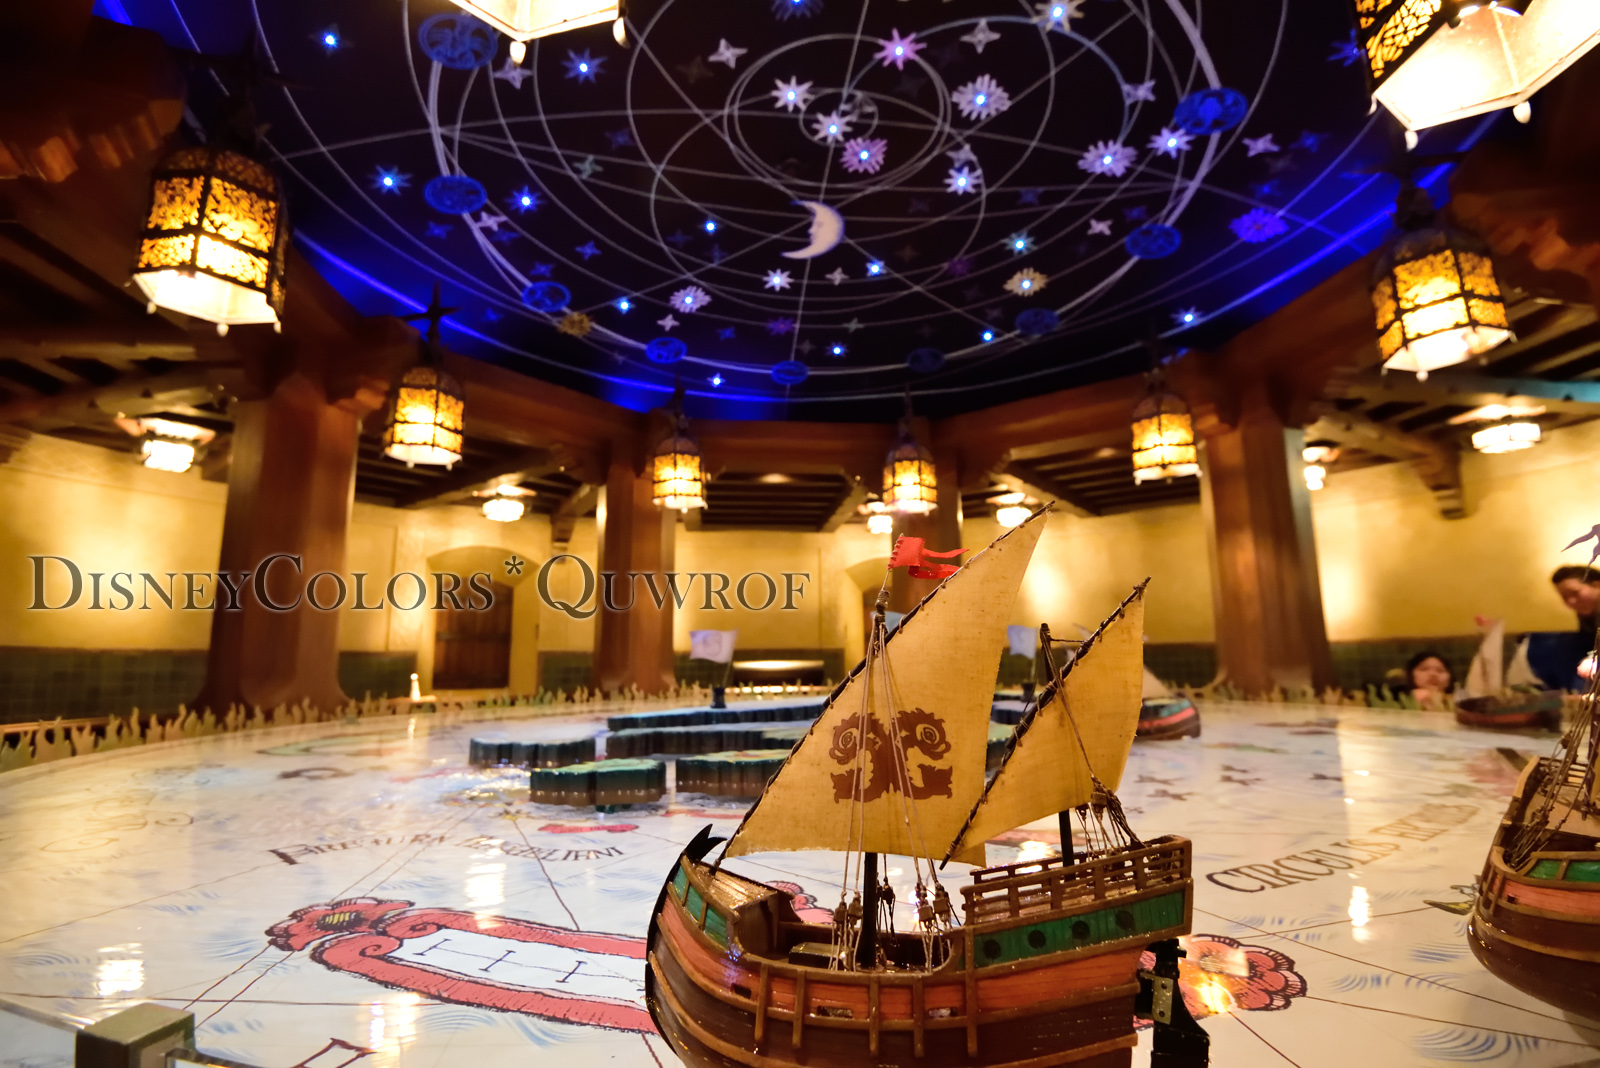 謎解きプログラム ドナルドと宝の地図 に挑戦 15年3月8日 東京ディズニーシーのインレポ Disney Colors Blog